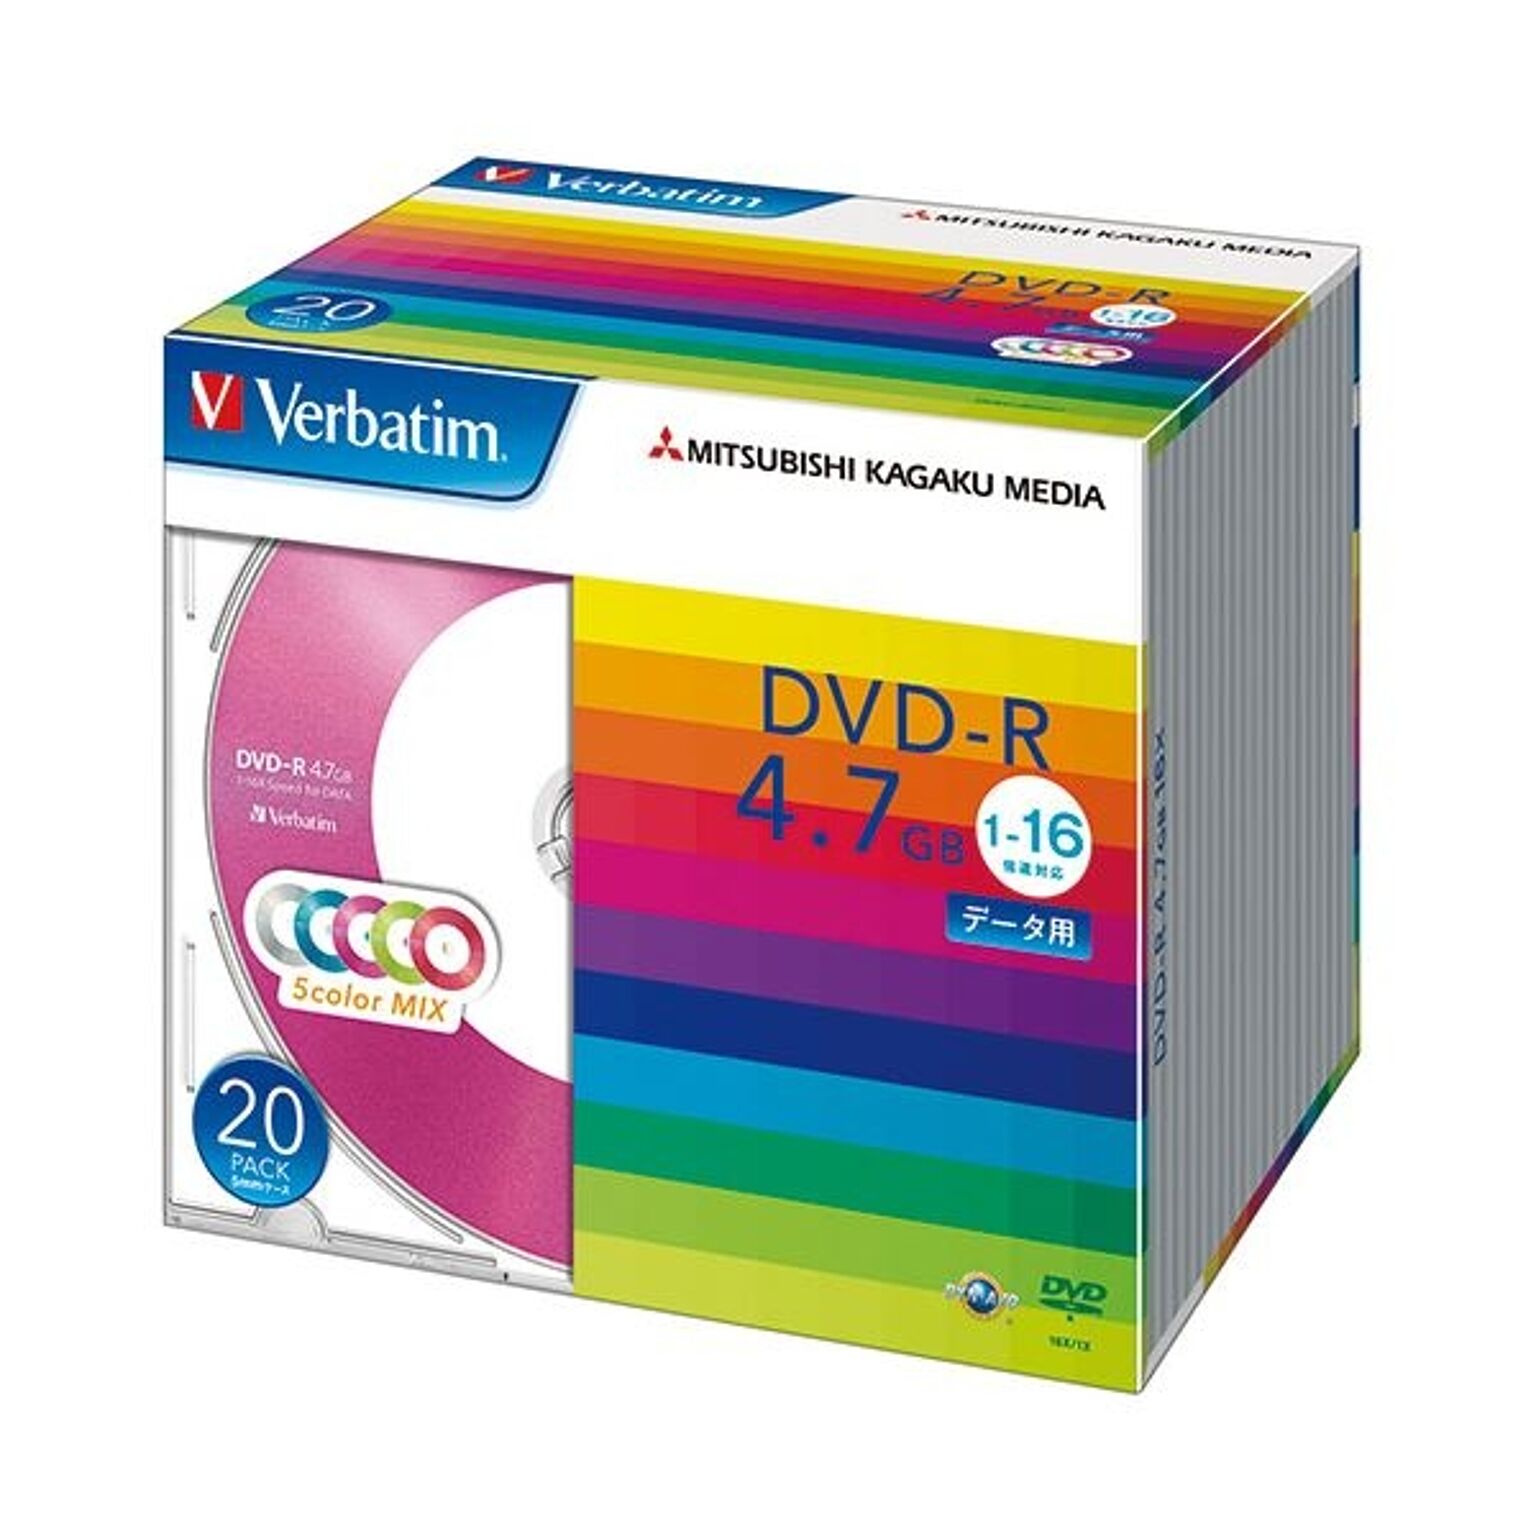 まとめ バーベイタム データ用DVD-R4.7GB 1-16倍速 5色カラーMIX 5mmスリムケース DHR47JM20V11パック20枚:各色4枚 ×10セット